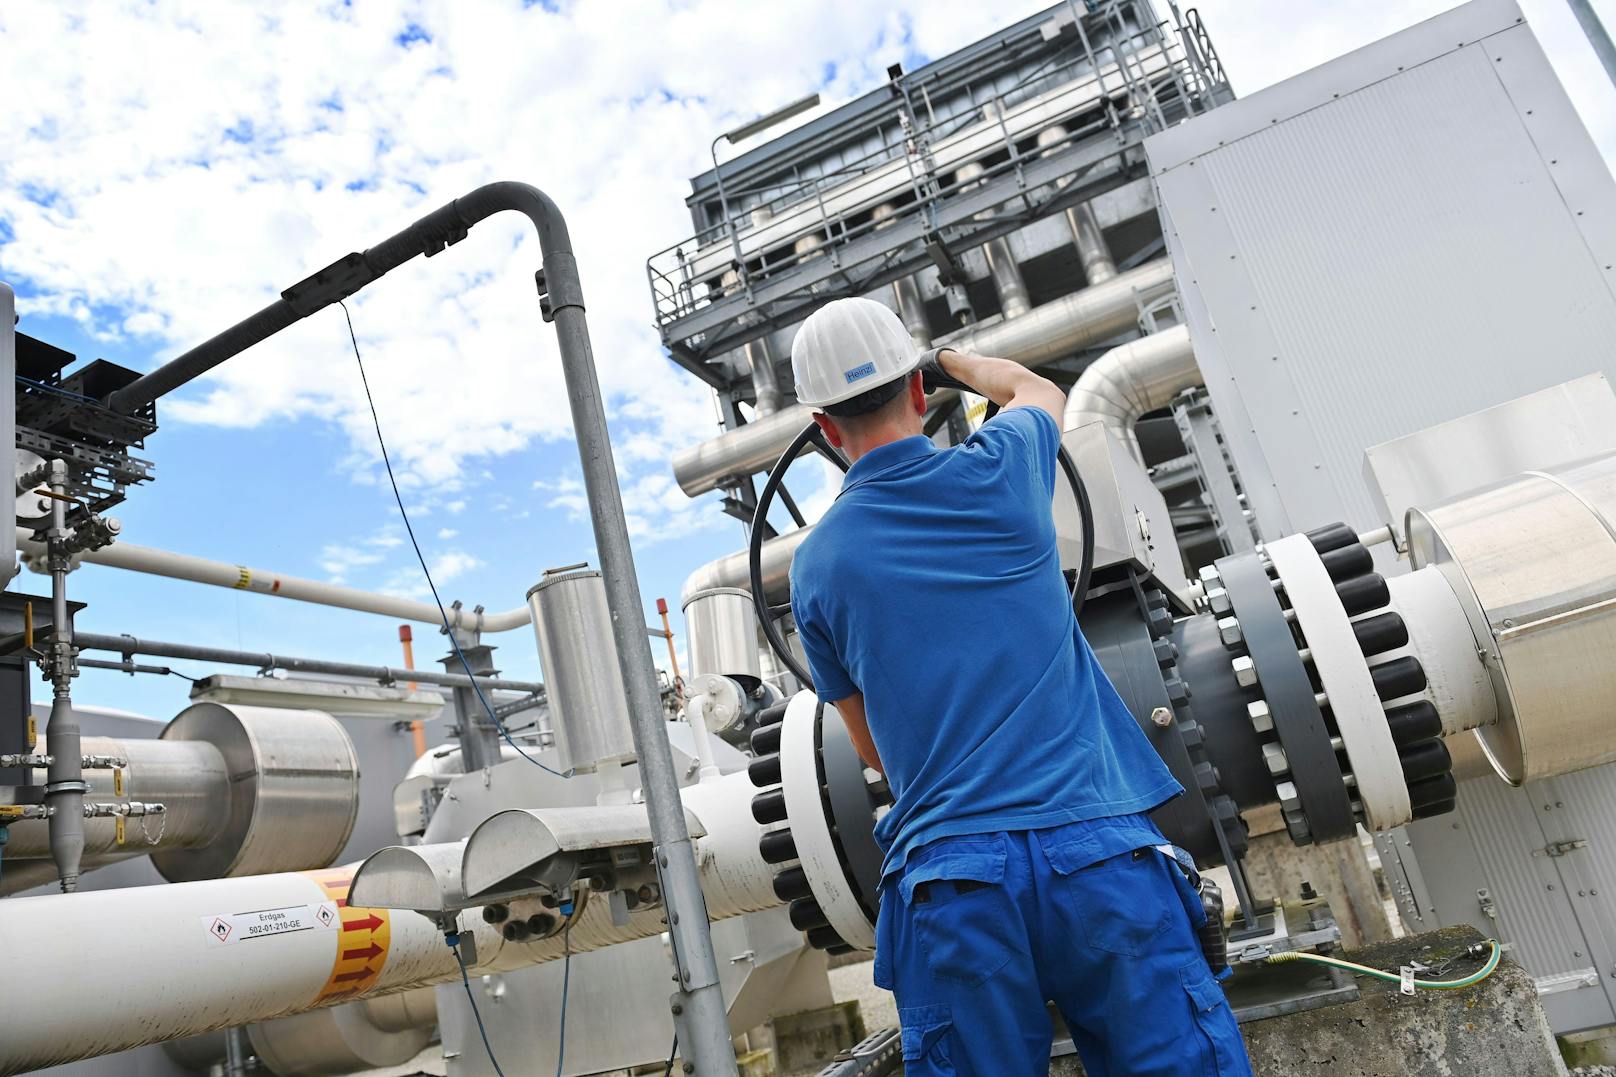 Mitarbeiter beim Gasspeicher Haidach – aufgrund des drohenden Gasstopps herrscht Katerstimmung in der Wirtschaft.